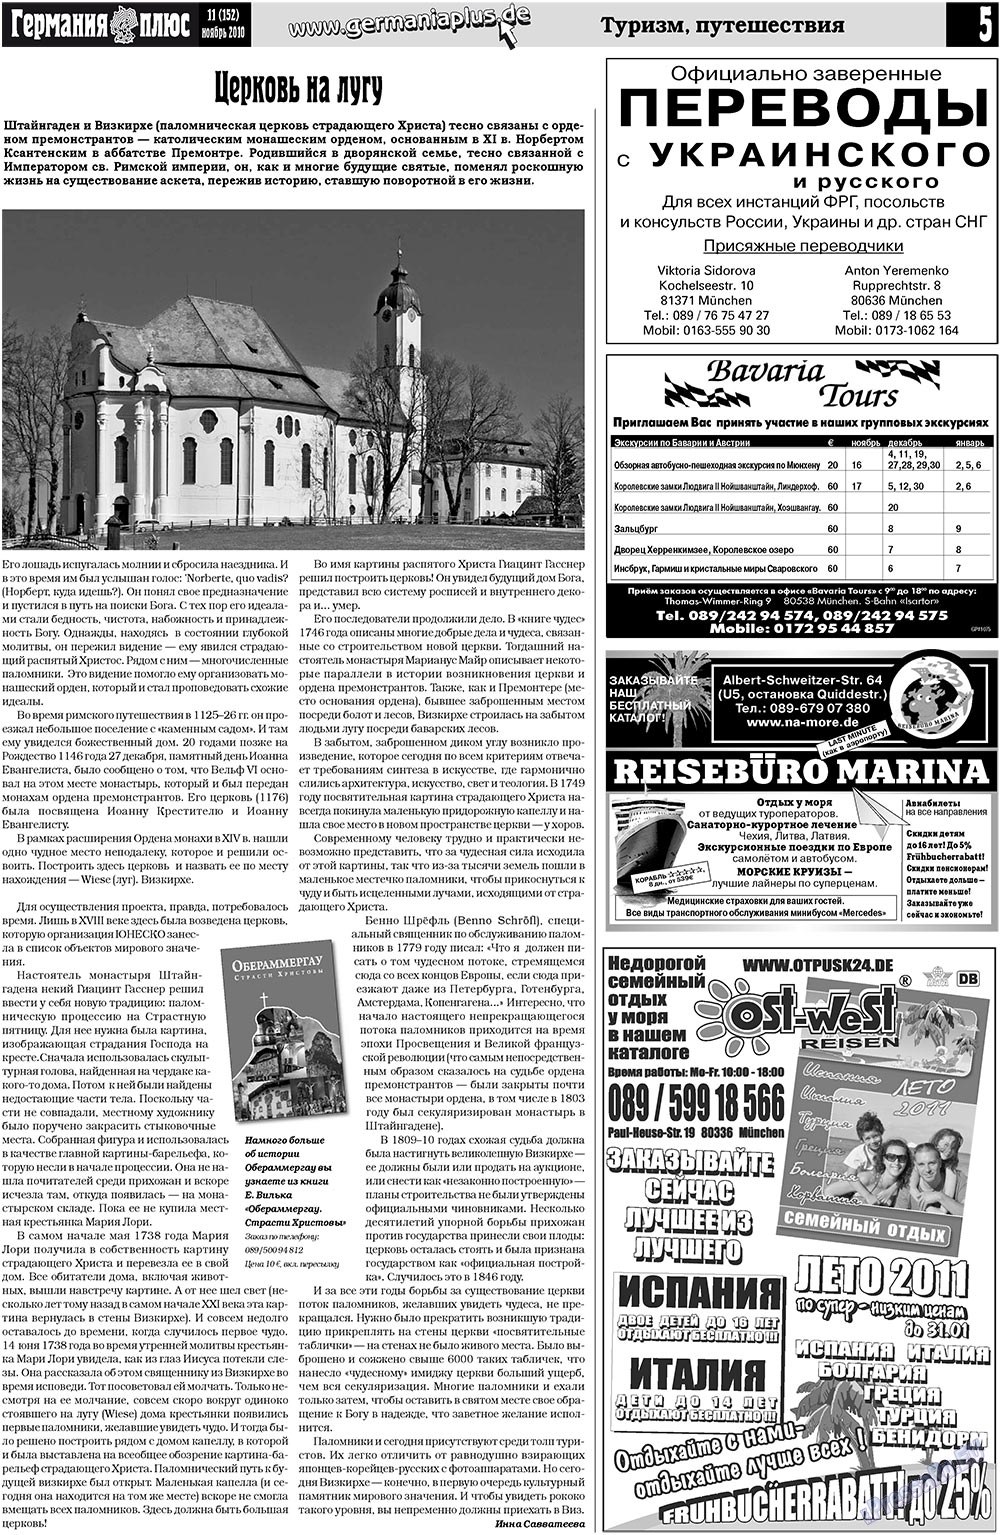 Германия плюс, газета. 2010 №11 стр.5